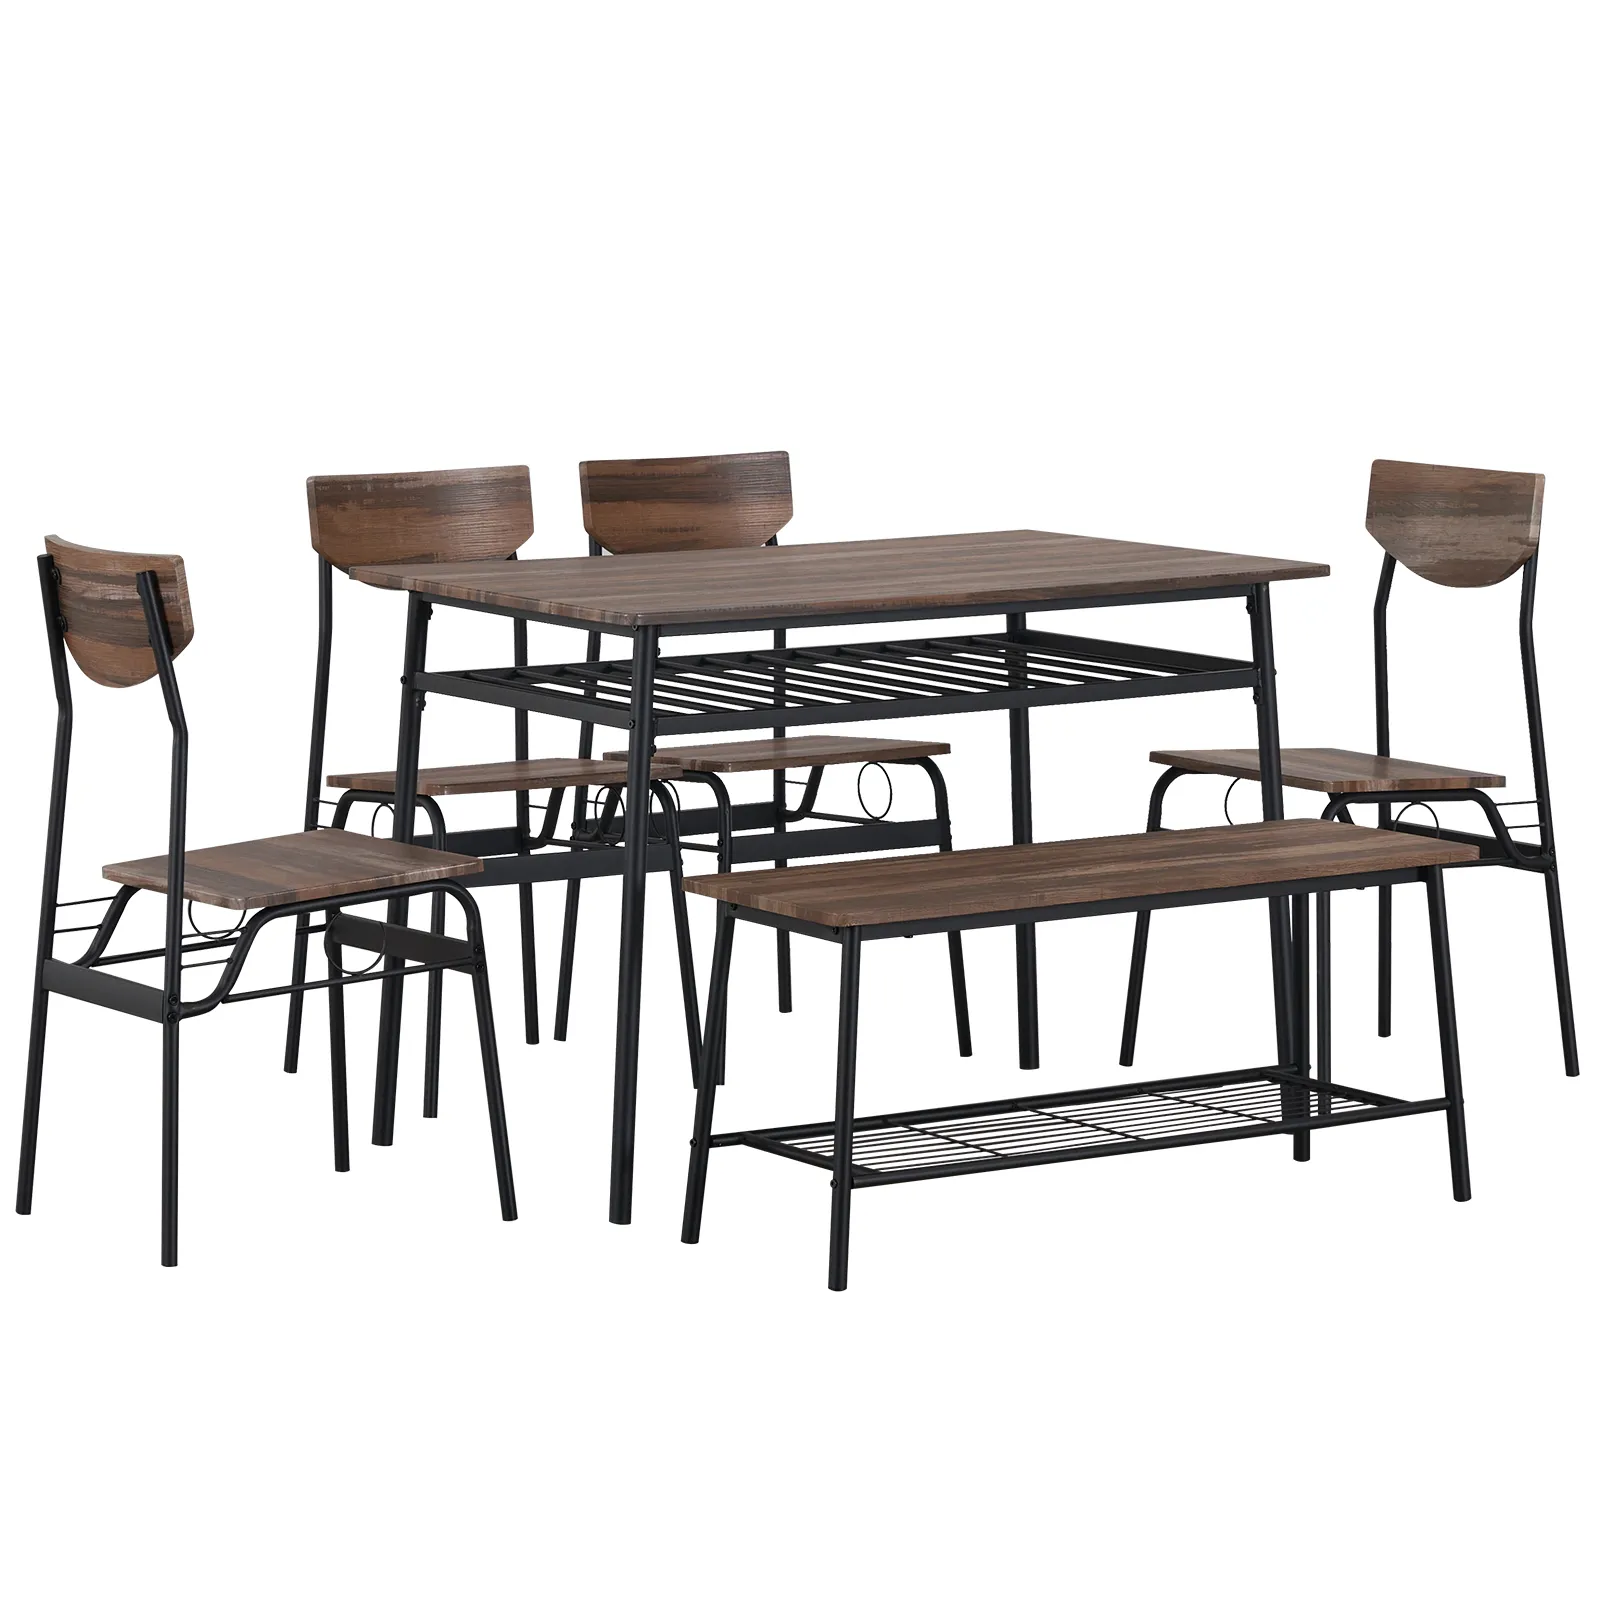 Современная столовая из 6 предметов для дома, кухни, столовой с стойками для хранения, прямоугольным столом, скамейкой, 4 стулья, стальной рамкой